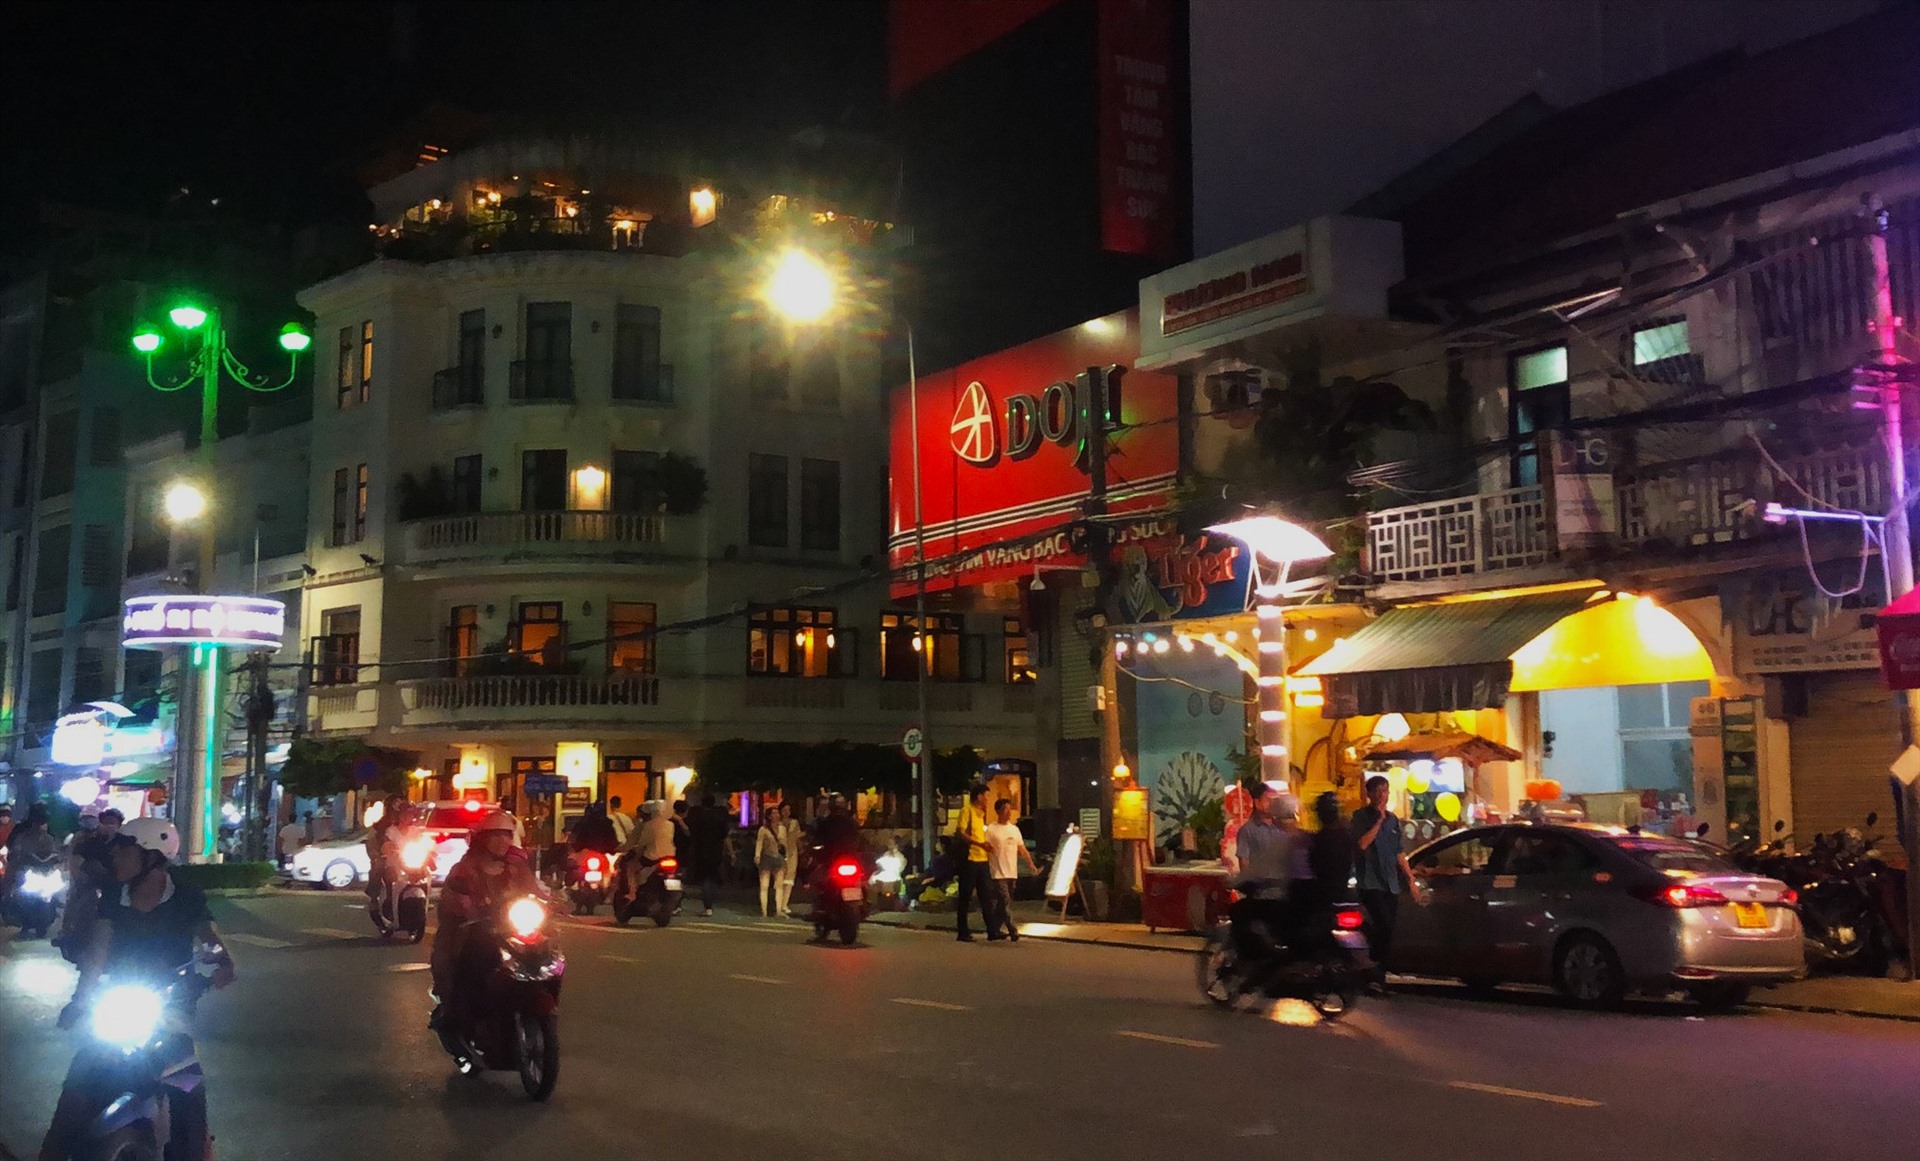 Theo ghi nhận, khoảng 22 giờ Bến Ninh Kiều vẫn còn khá đông du khách. Ảnh: Bích Ngọc